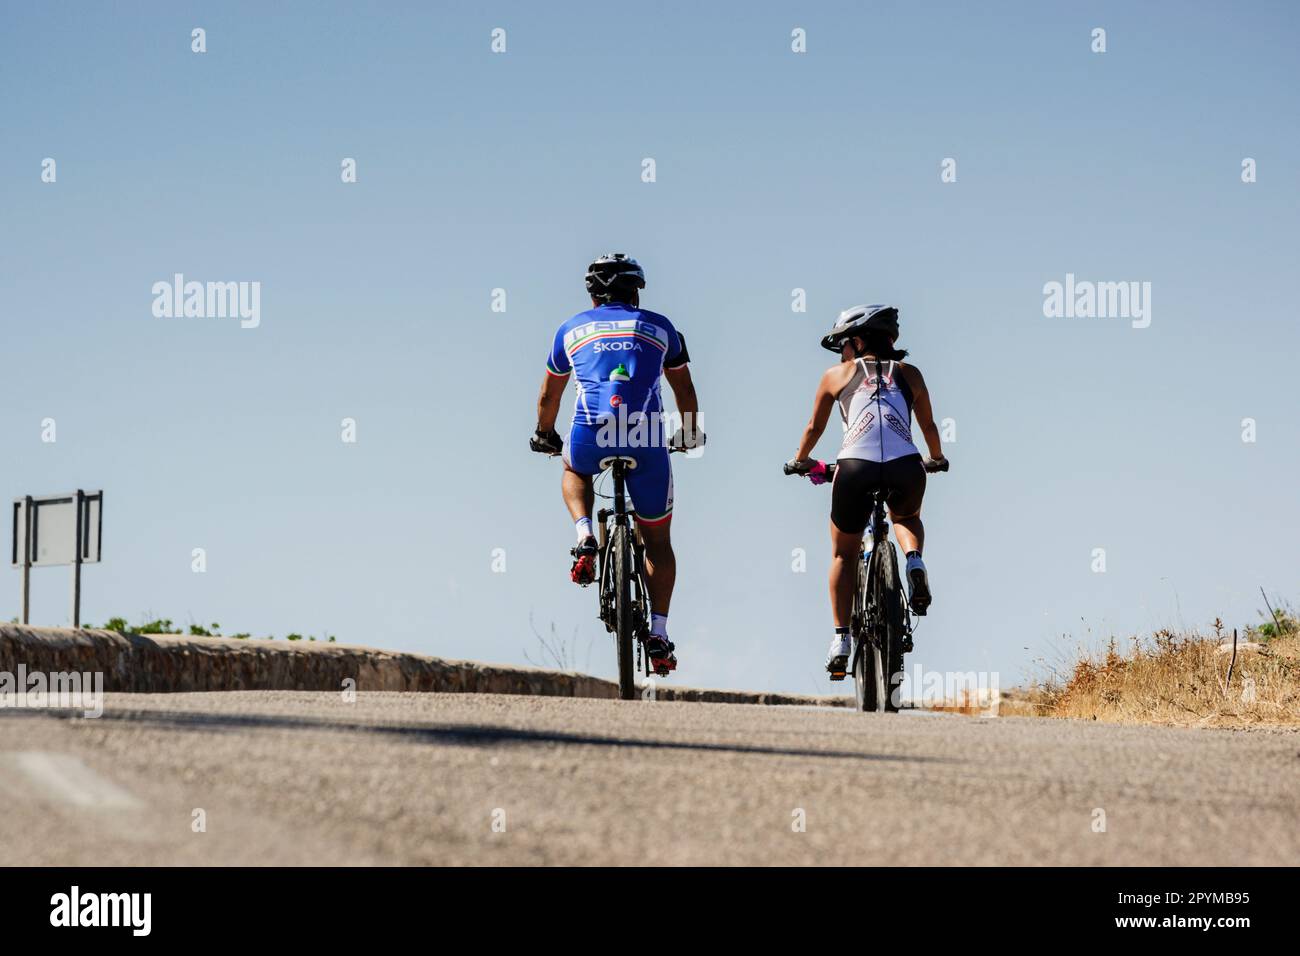 Ciclisti che scendono dal santuario di cura, Llucmajor, maiorca, isole baleari, spagna, europa Foto Stock